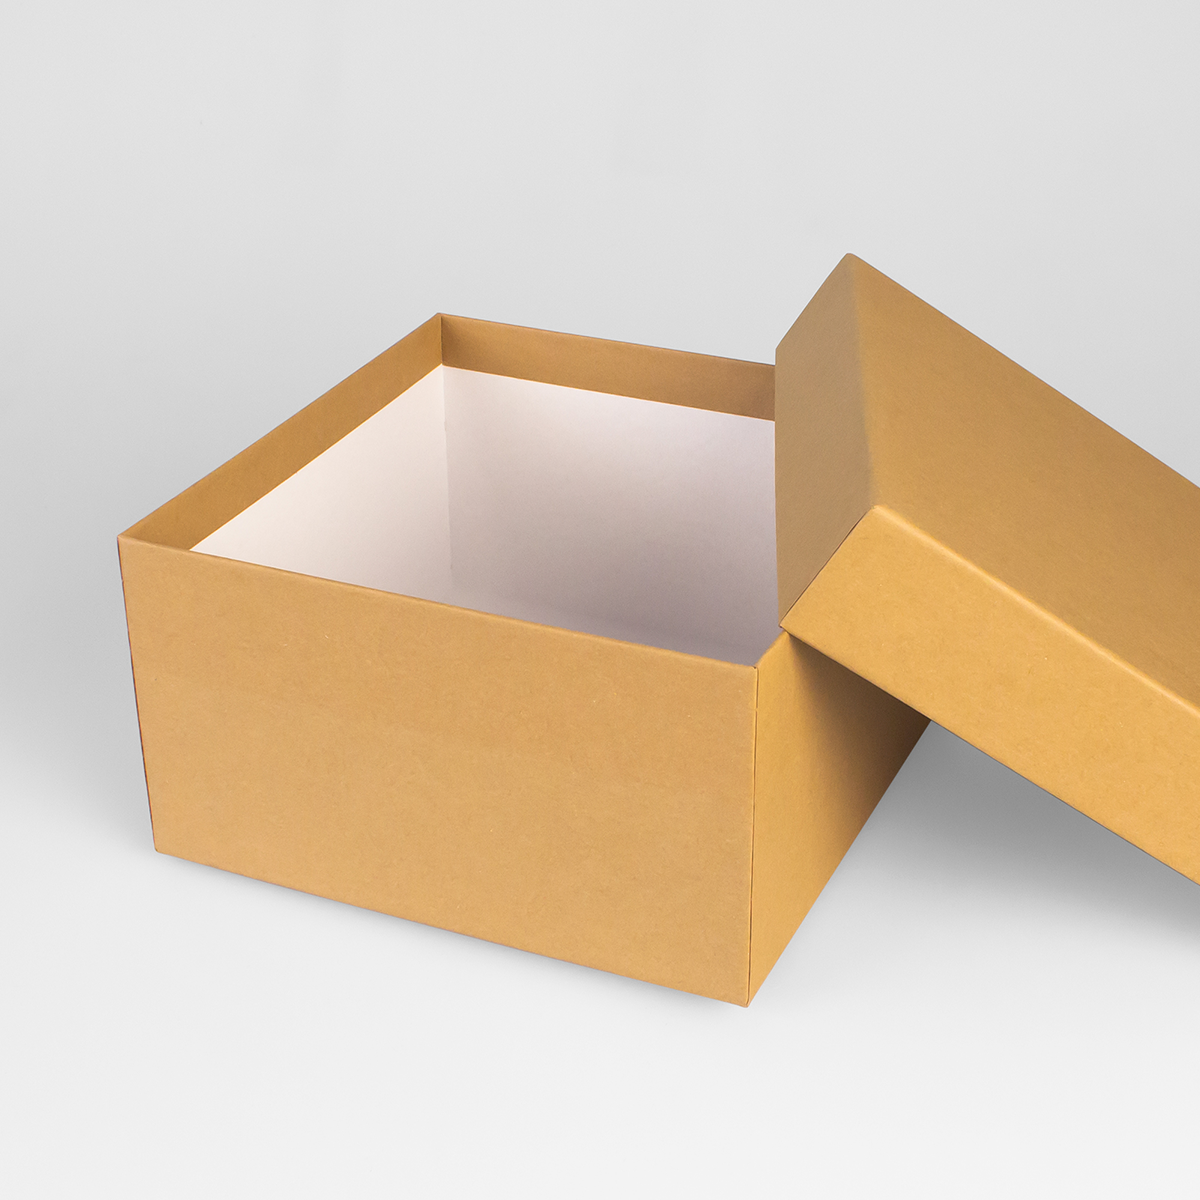 Подарочная коробка крышка-дно, 19 x 19 x 10,5 см. "Крафт", коричневый